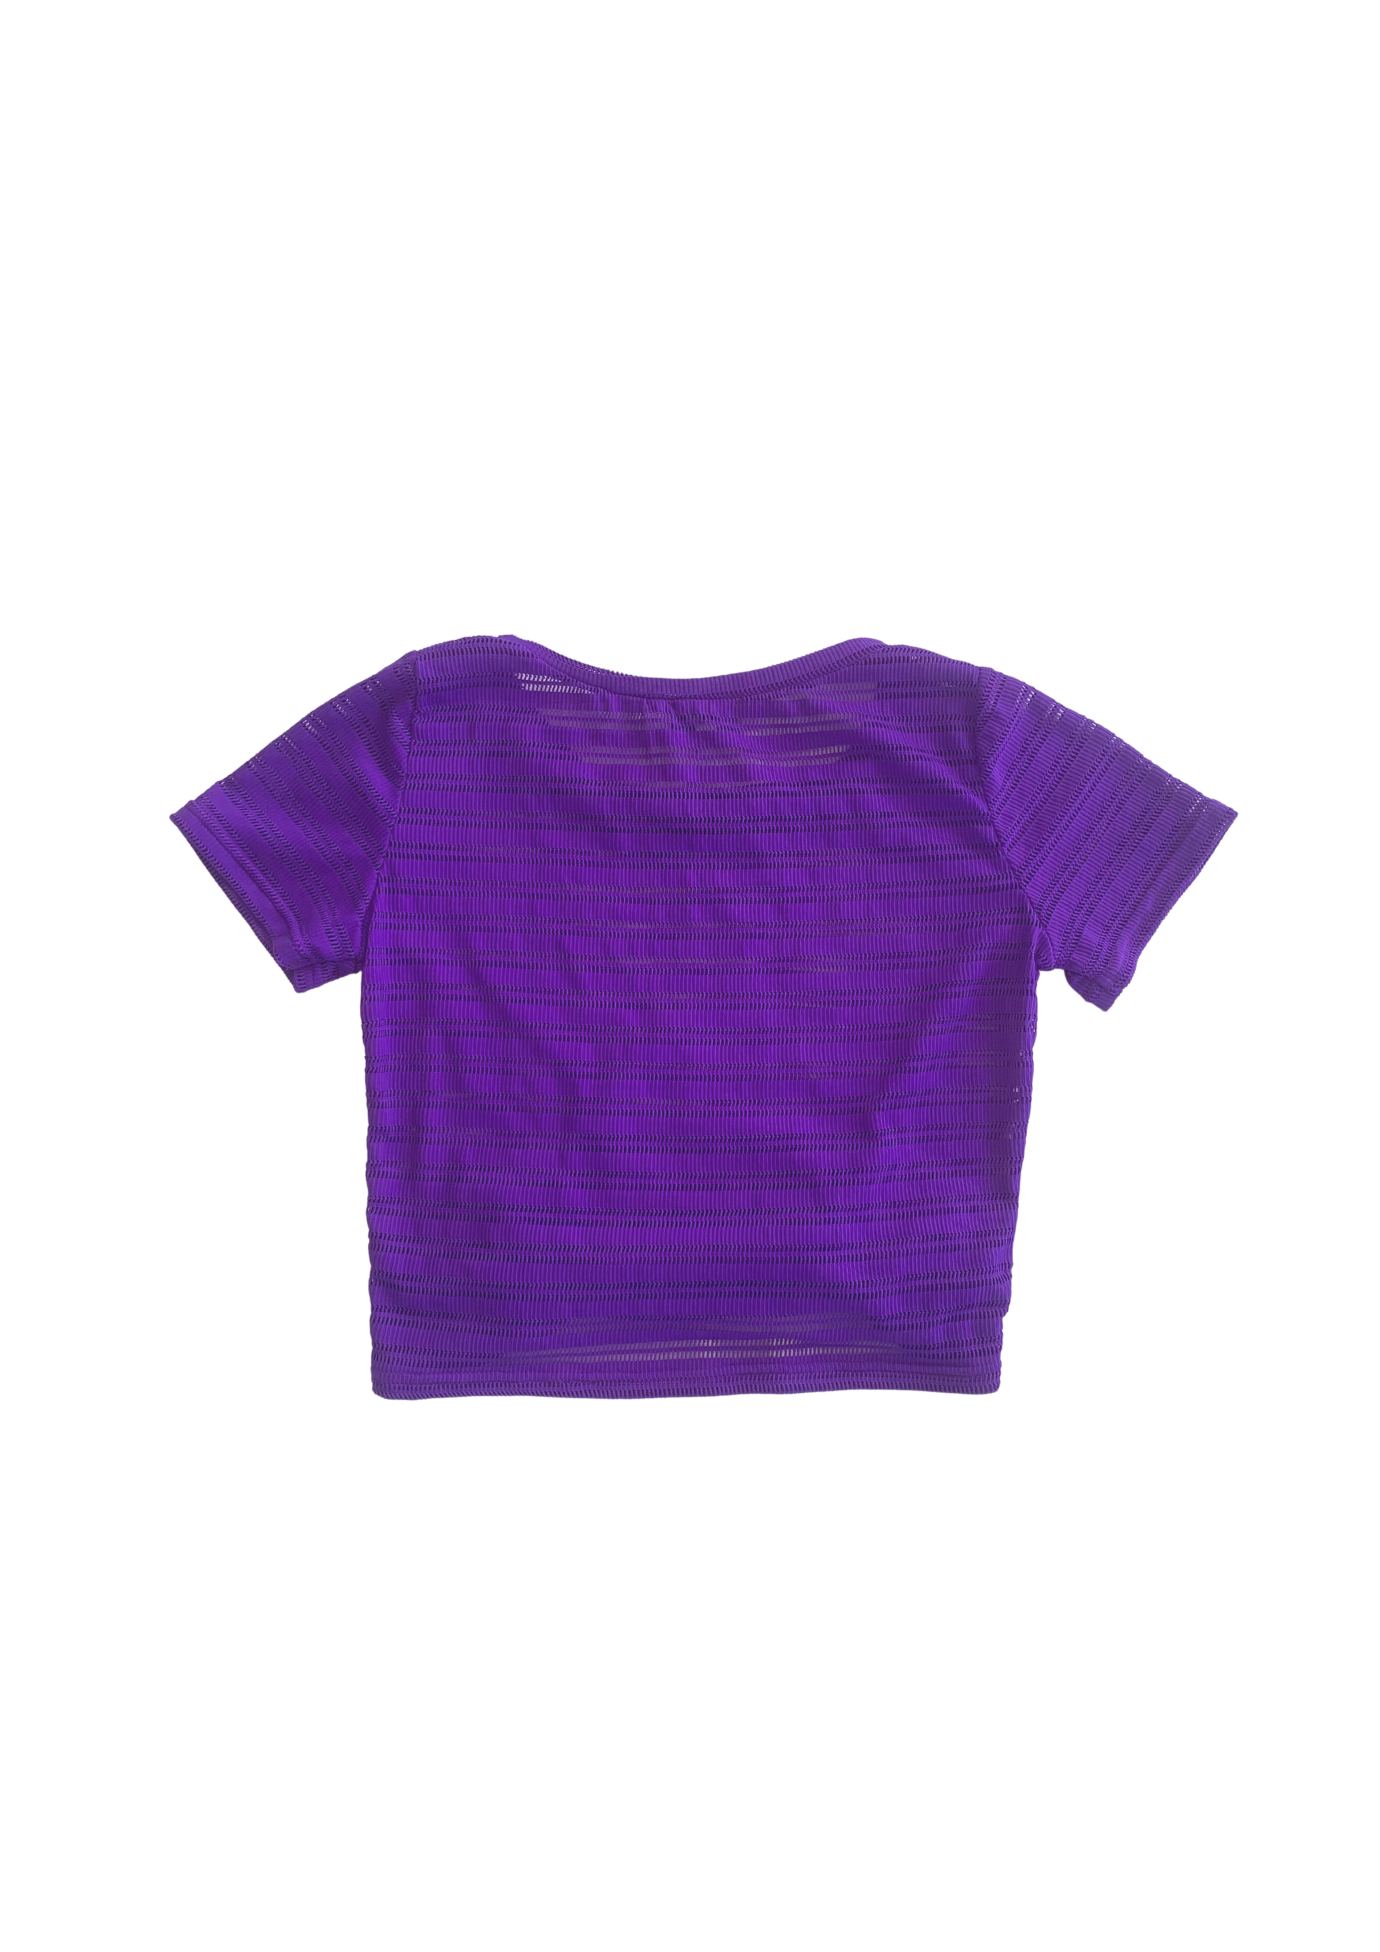 Purple crop top sustainable streetwear brand